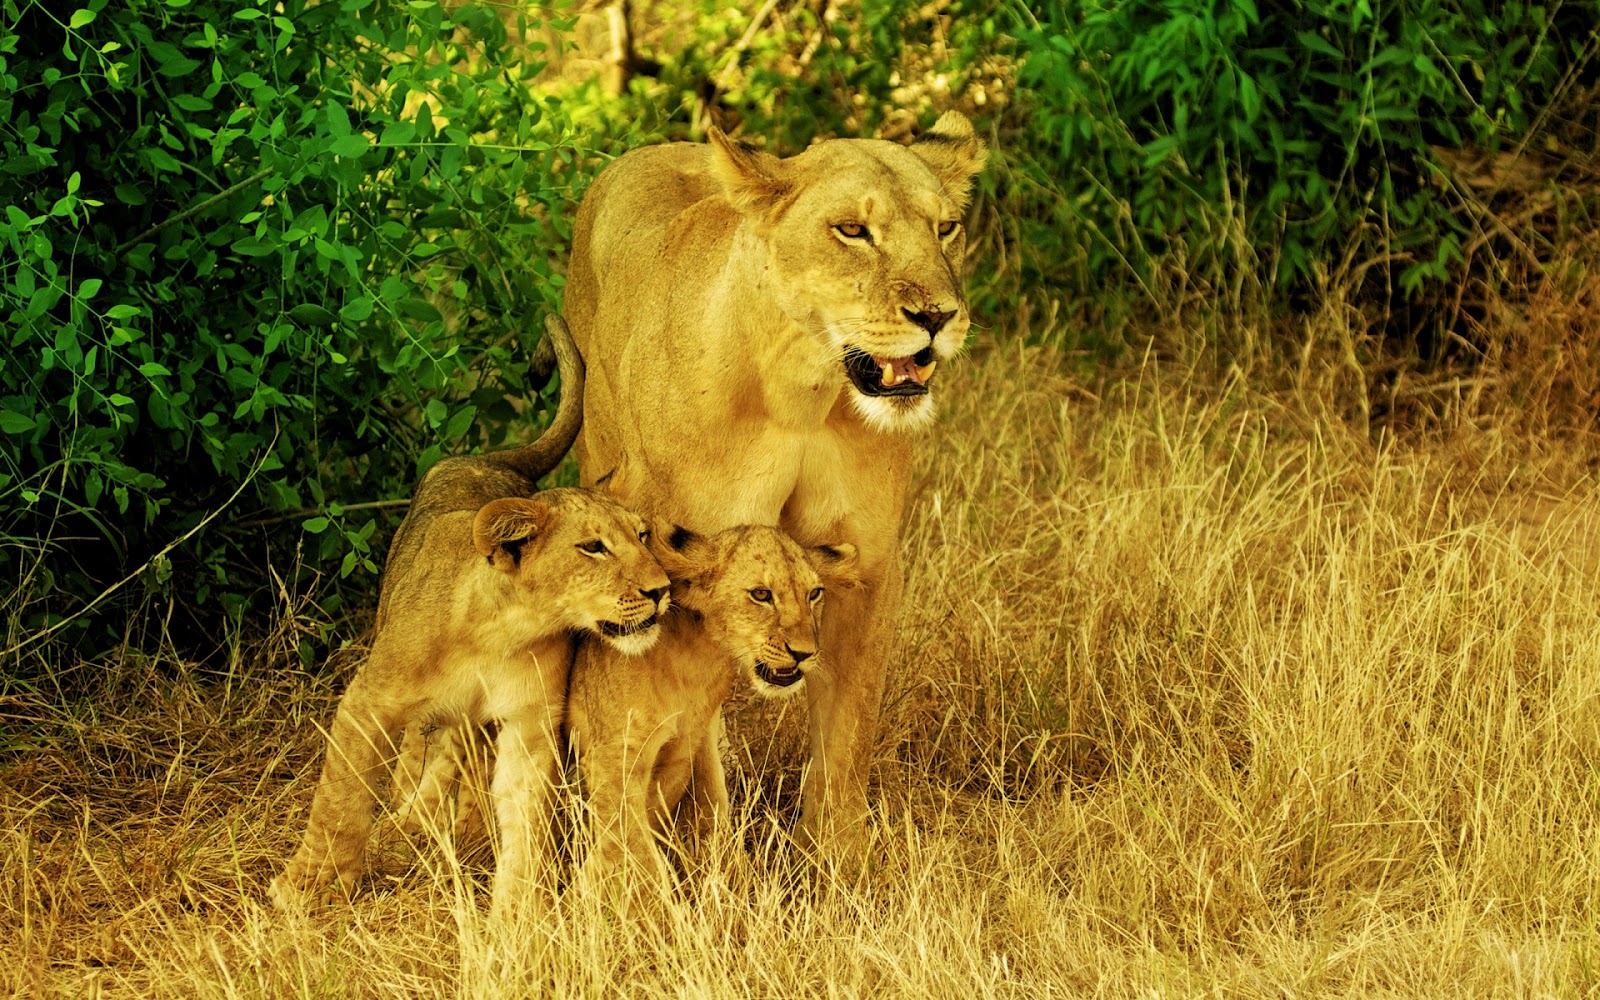 leone wallpaper hd 1080p,natura,leone,animale terrestre,felidae,leone masai